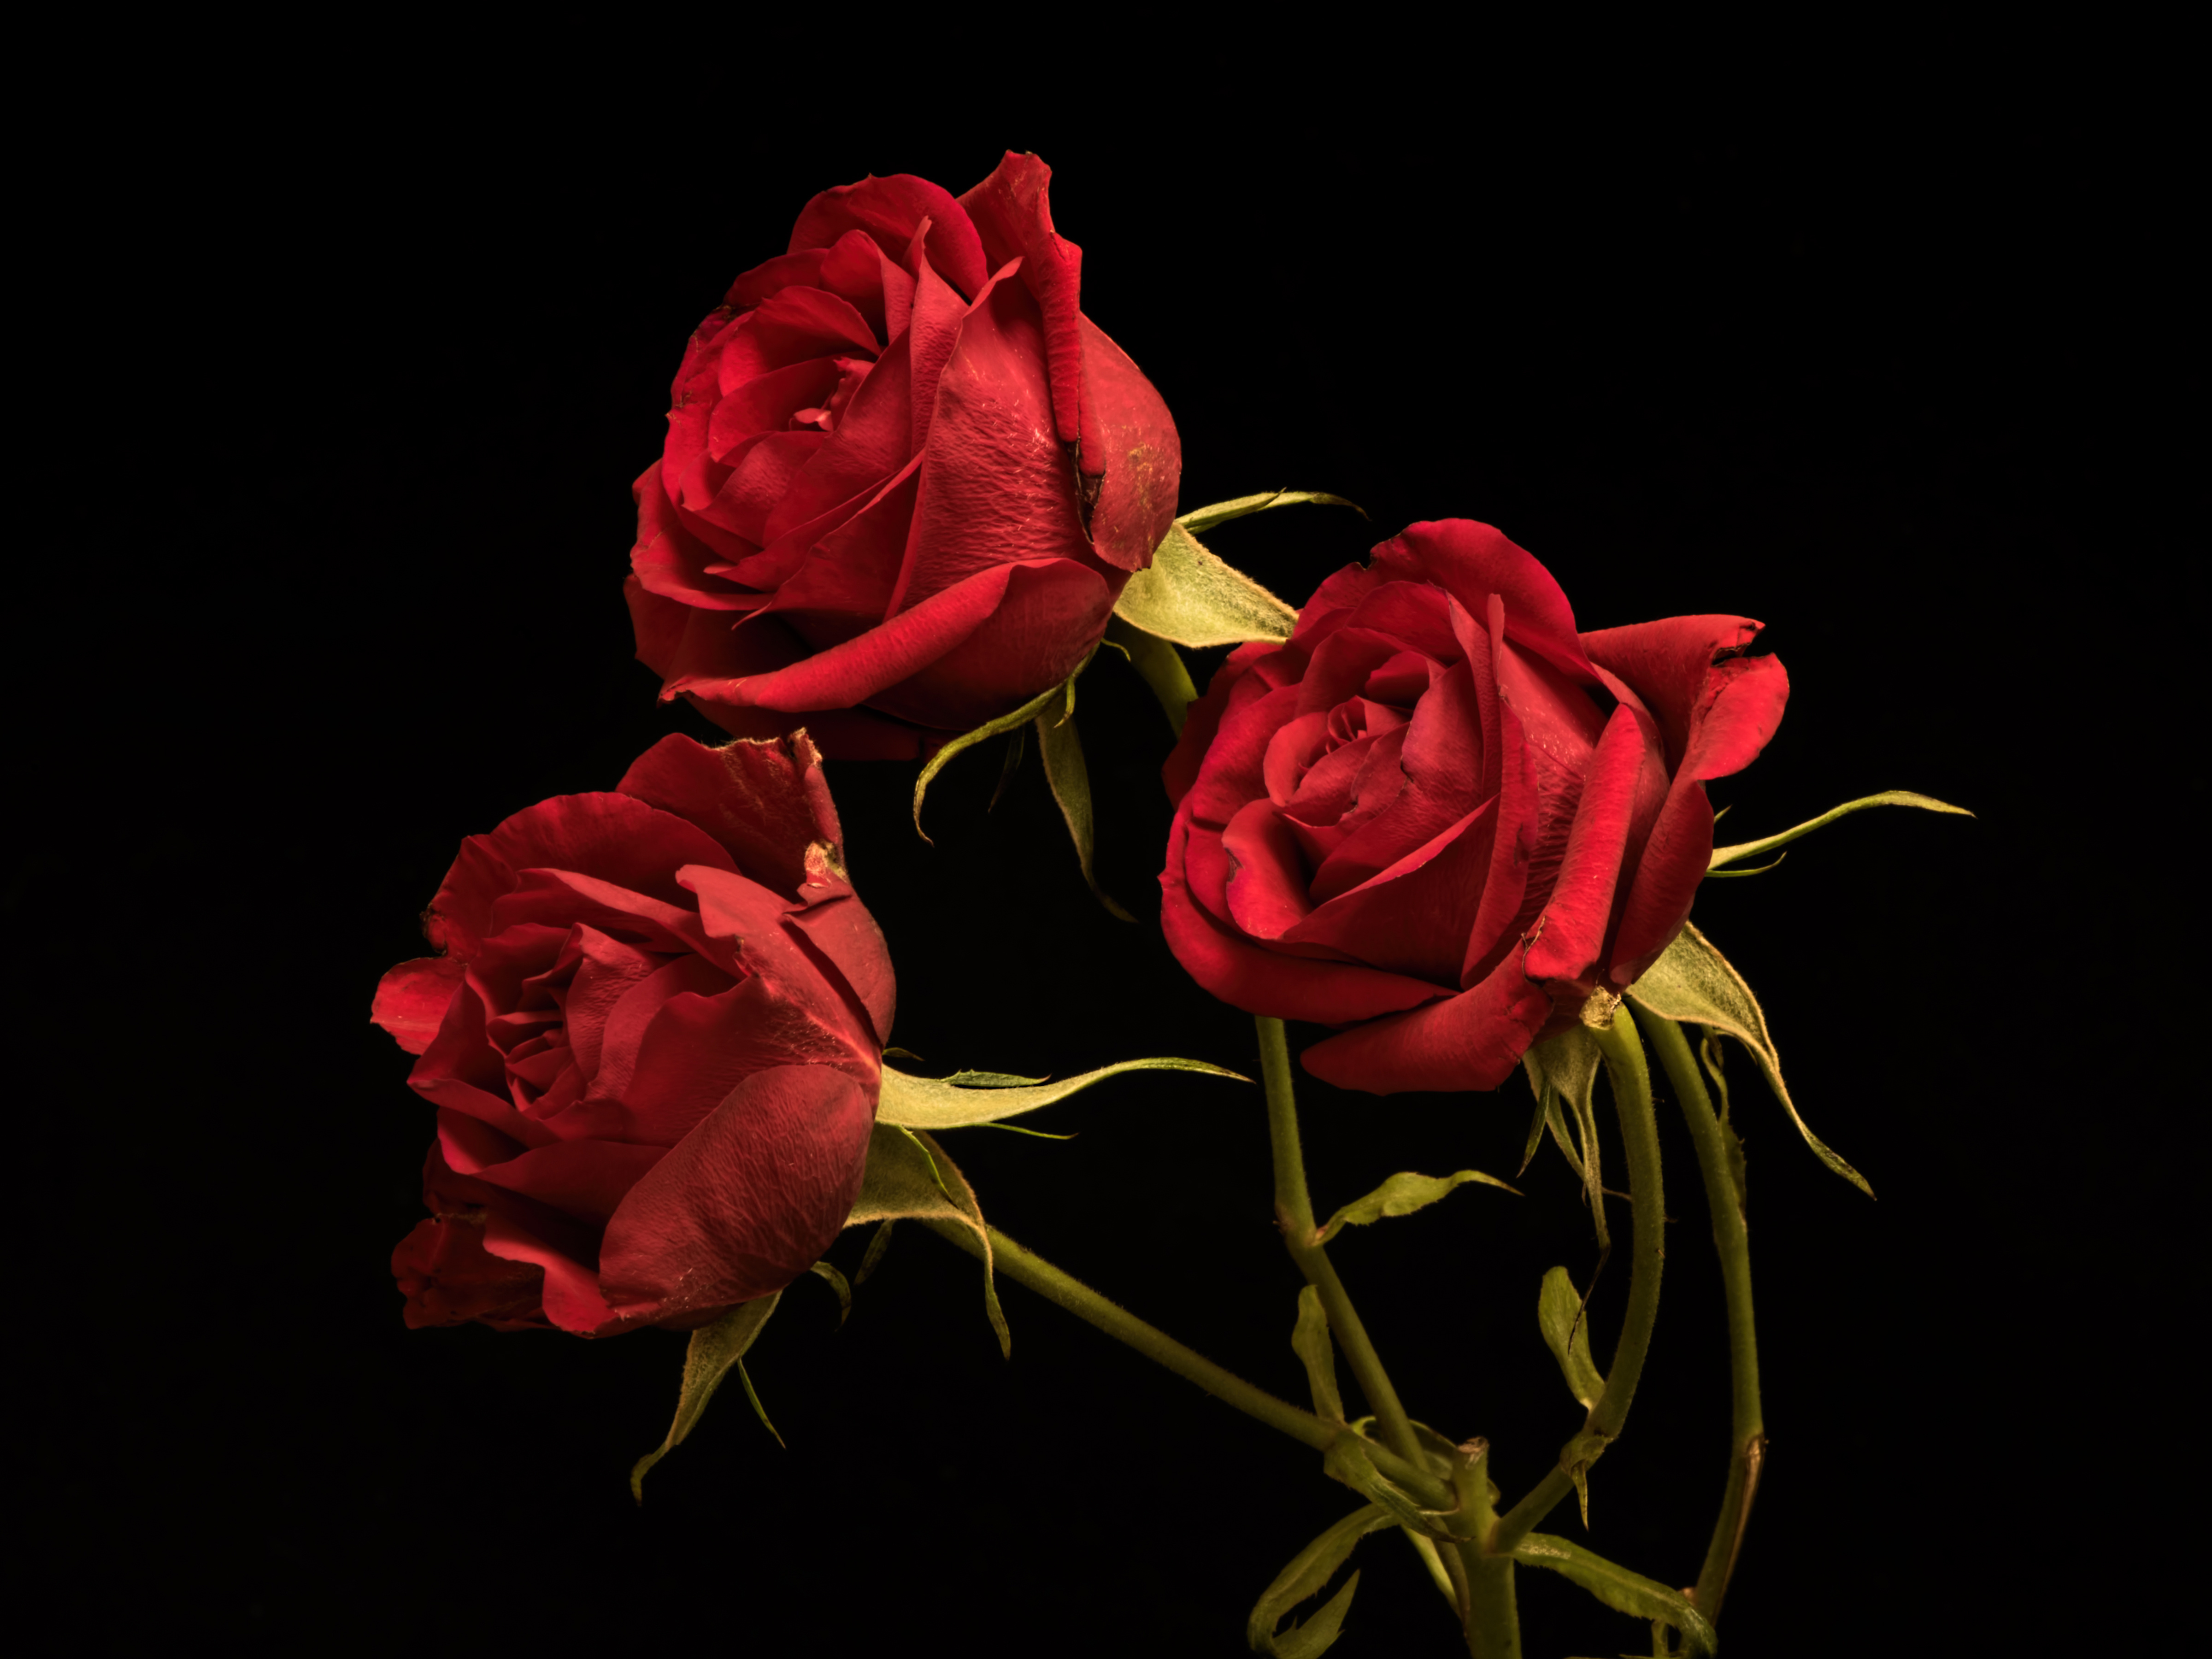 Картинки Розы Красный цветок Трое 3 на черном фоне 4800x3600 роза красная красные красных Цветы три втроем Черный фон